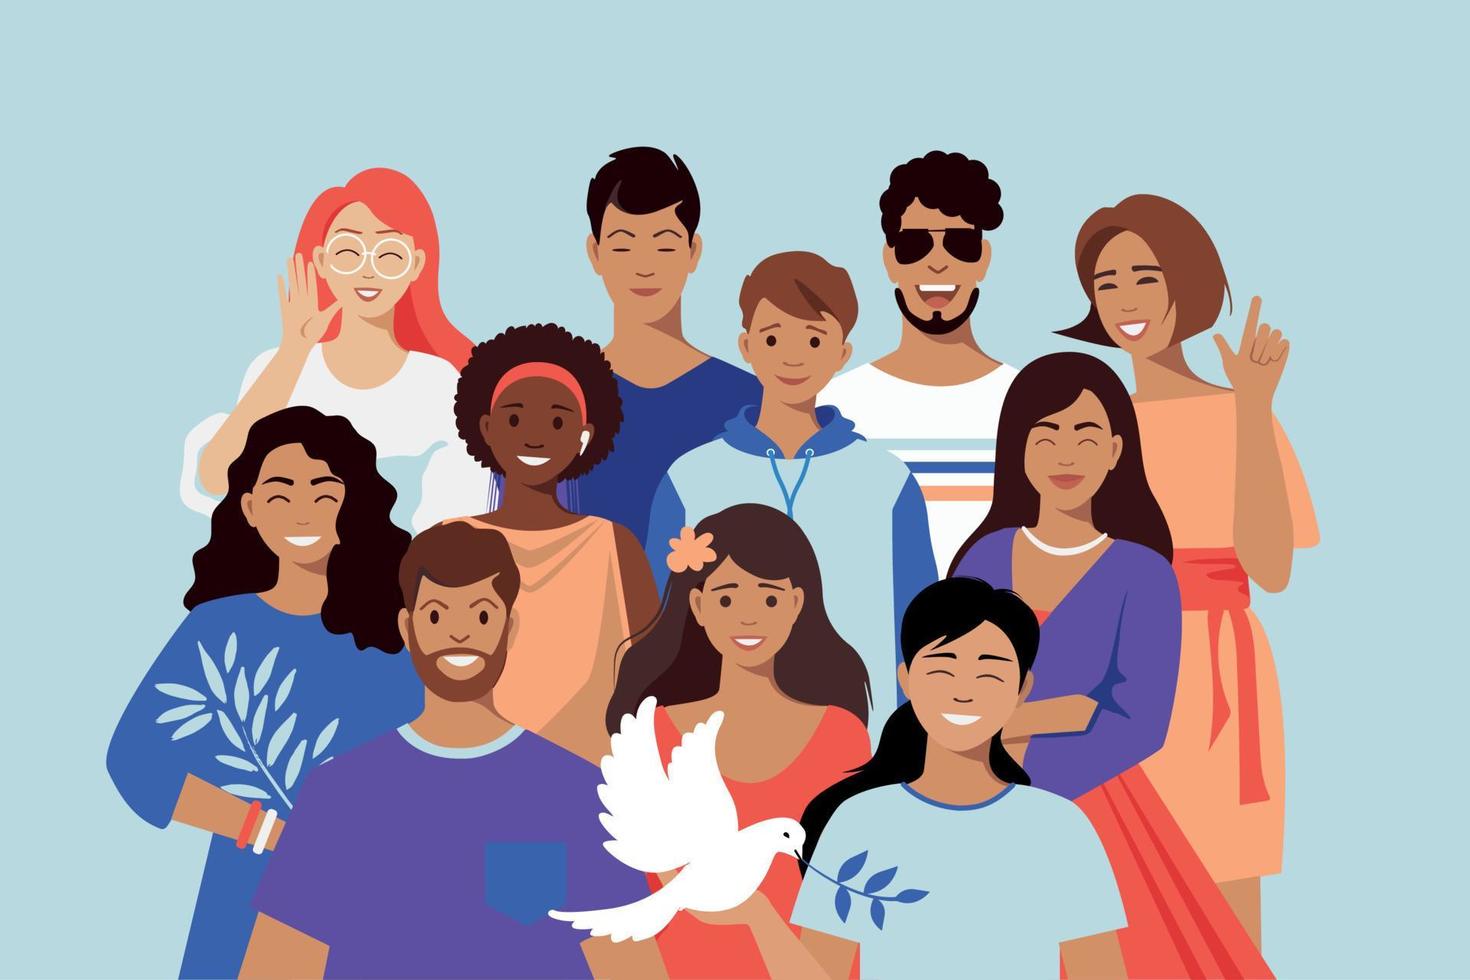 équipe multiculturelle, amis. la colombe est un symbole de paix. unité dans la diversité. personnes de nationalités différentes. société multinationale. vecteur